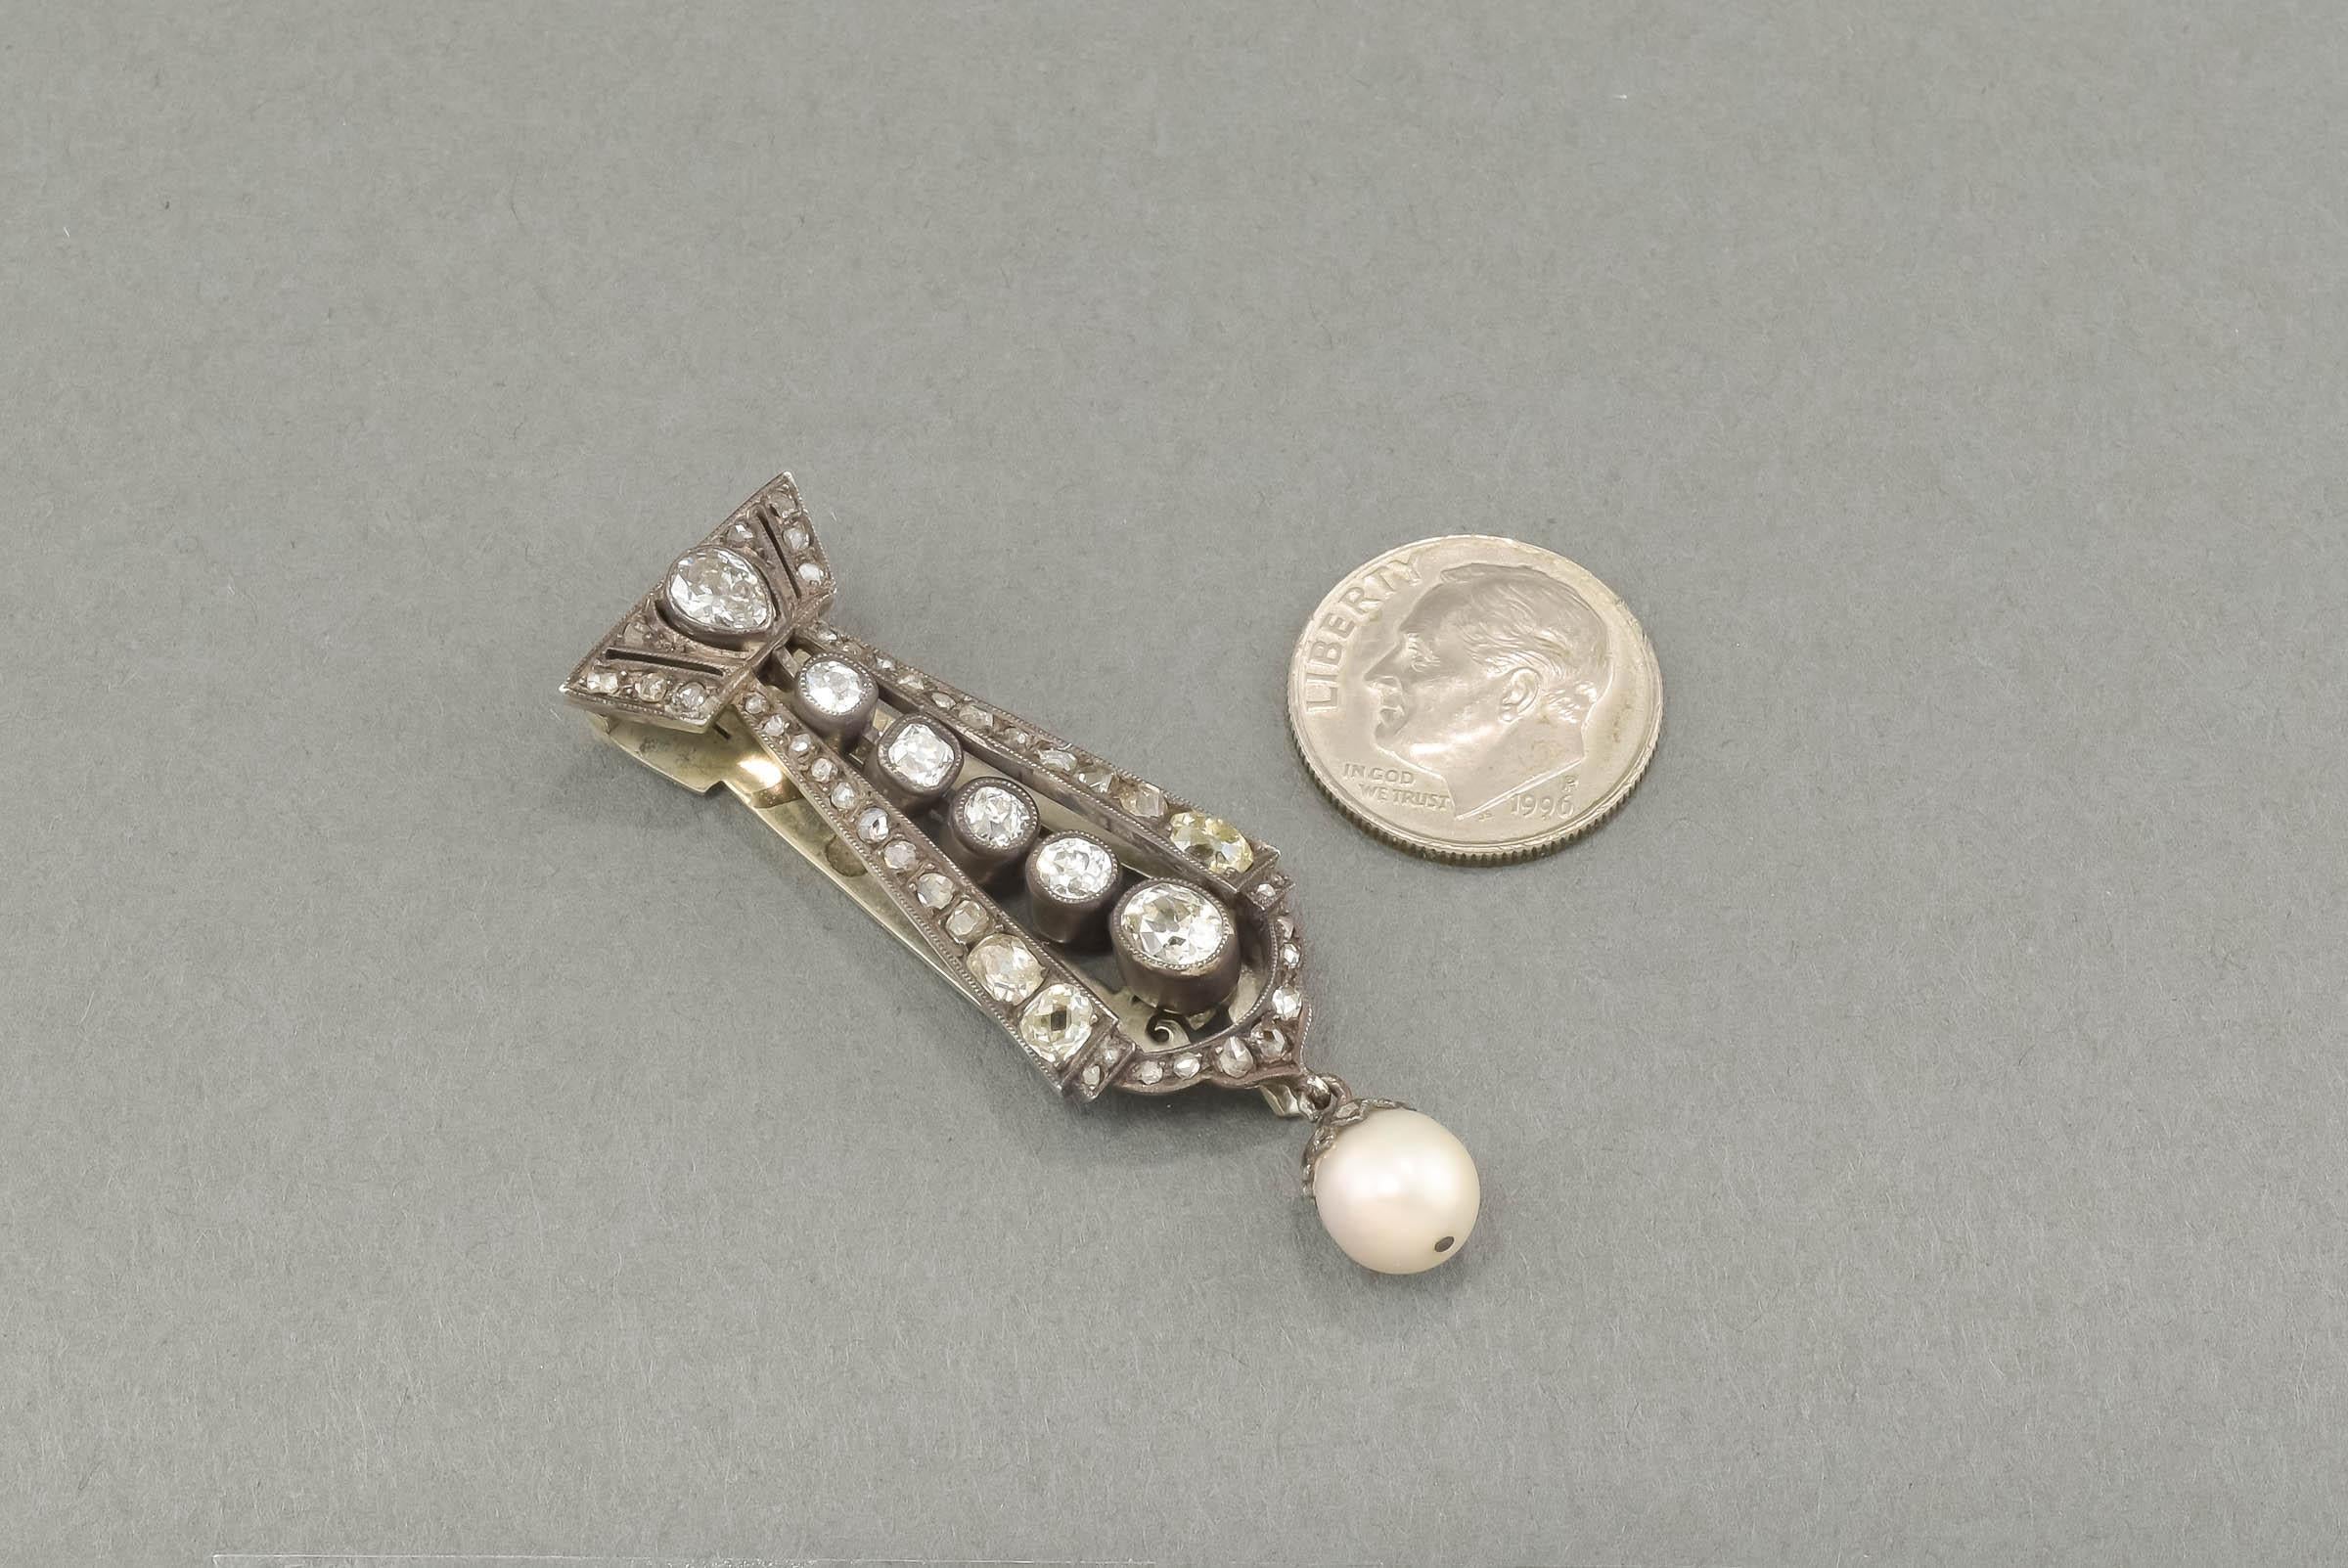 Un pendentif en diamant et perle de l'époque victorienne absolument magnifique - Dress Clip avec des diamants taille ancienne et taille rose superbes et ardents ainsi qu'une goutte de perle lustrée de taille appréciable.  Tout simplement magnifique